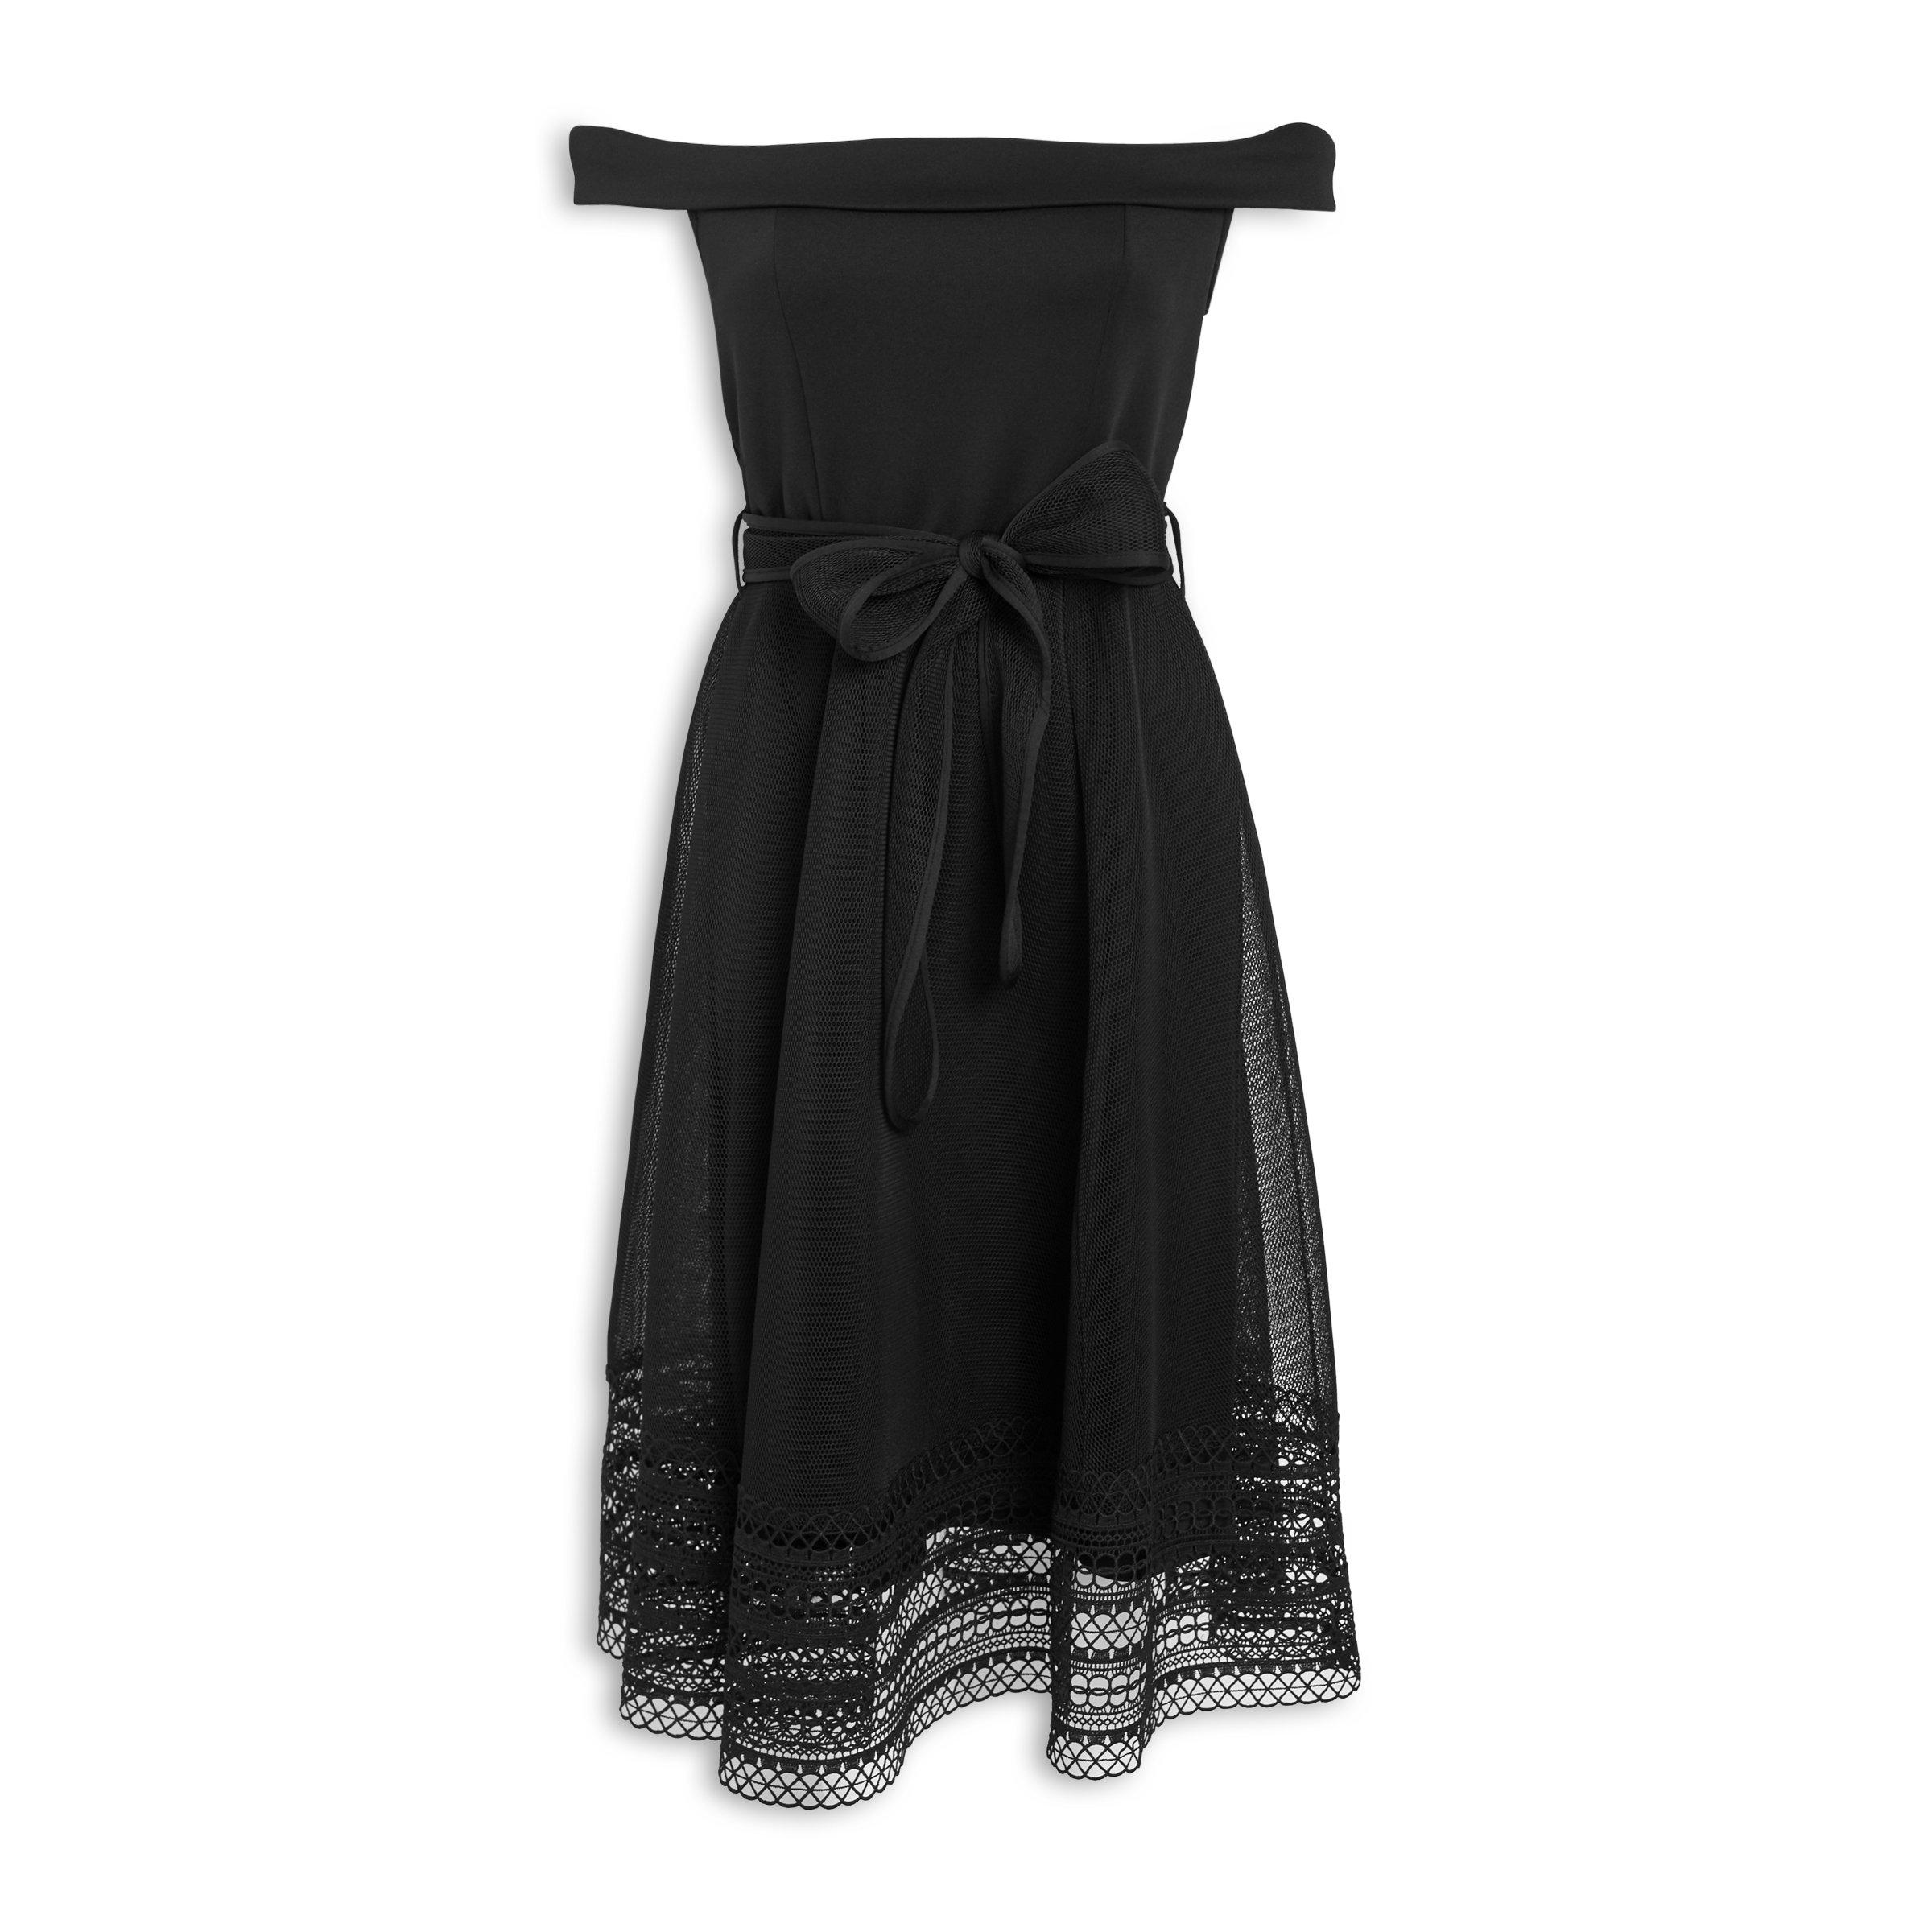 truworths black formal dresses